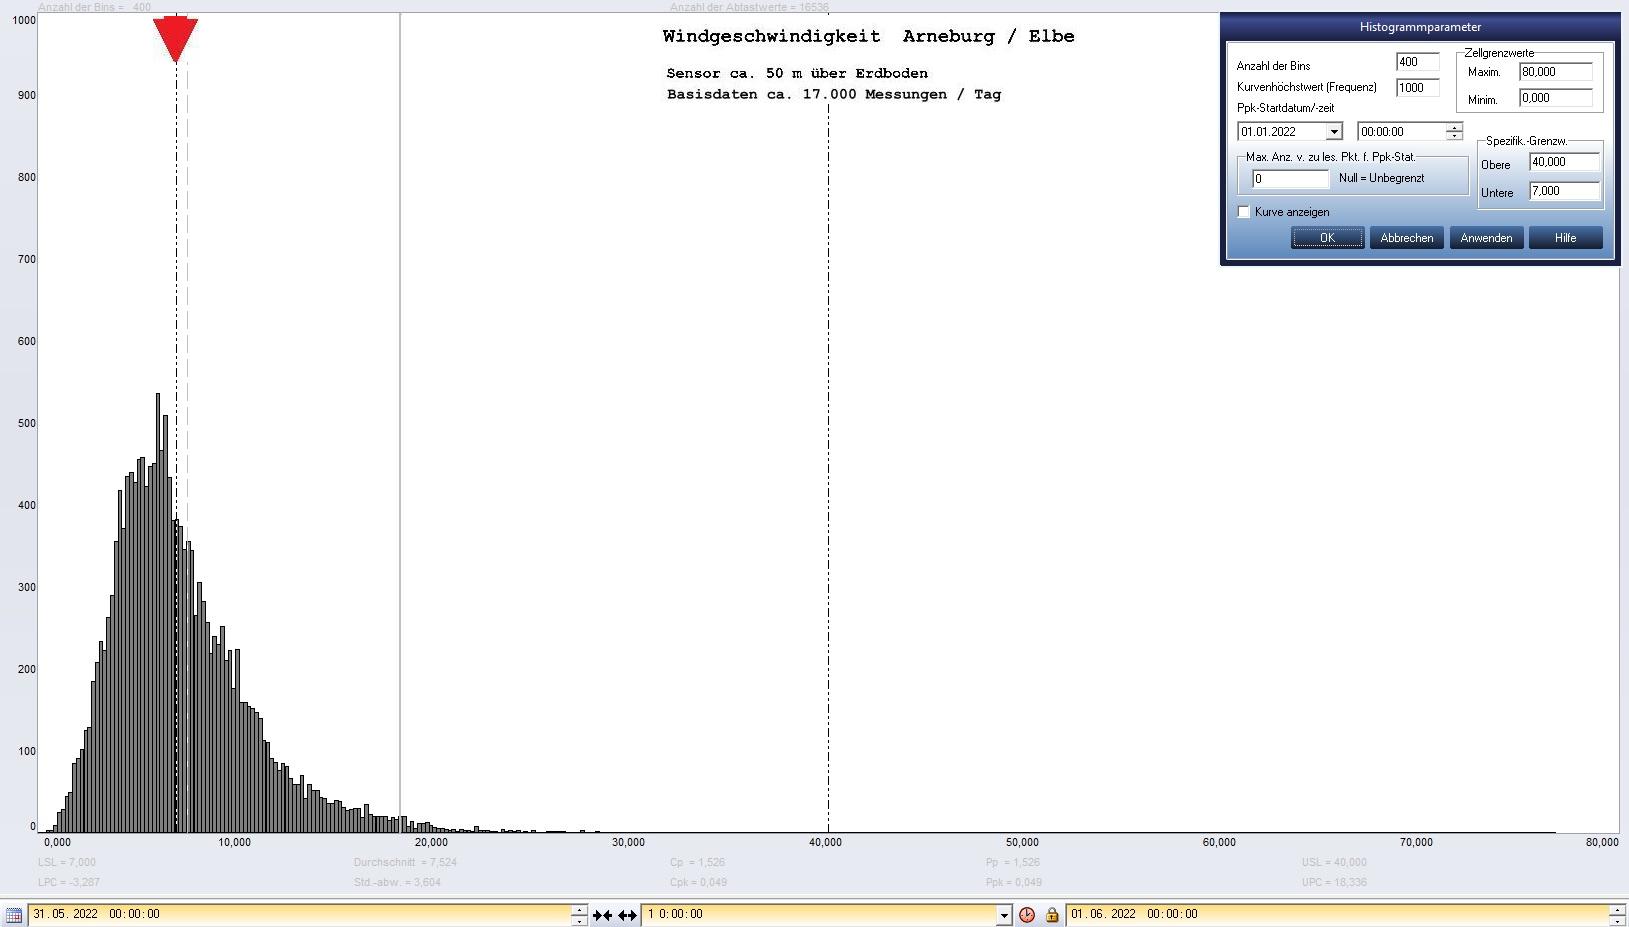 Arneburg Tages-Histogramm Winddaten, 31.05.2022
  Histogramm, Sensor auf Gebude, ca. 50 m ber Erdboden, Basis: 5s-Aufzeichnung